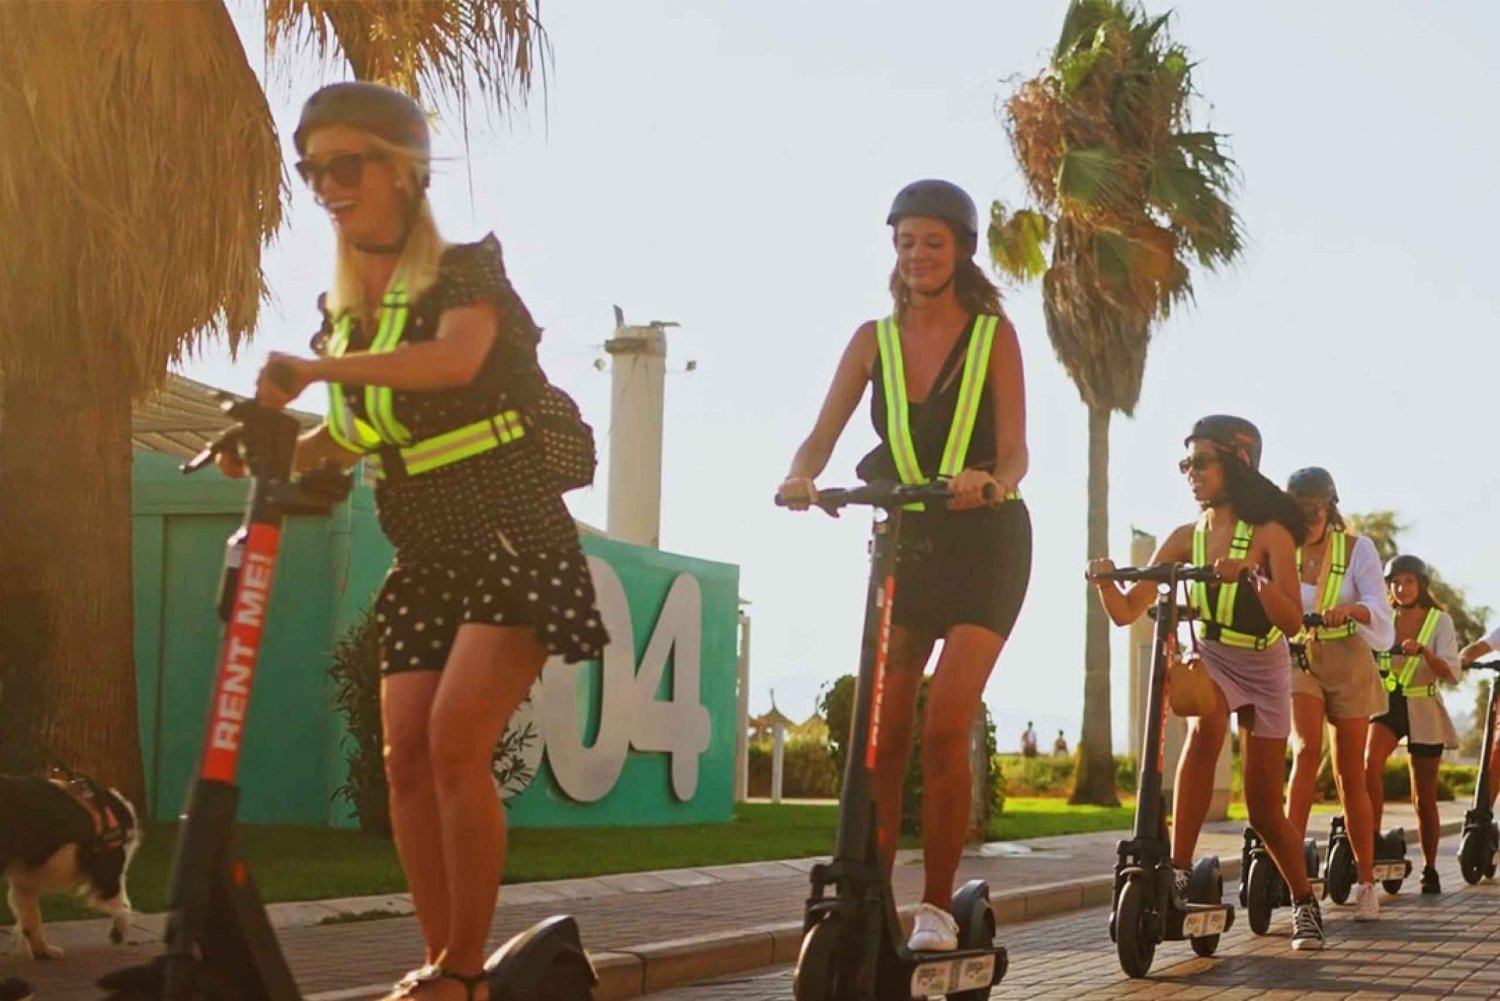 Playa de Palma: Udlejning af E-scooter og hjelm